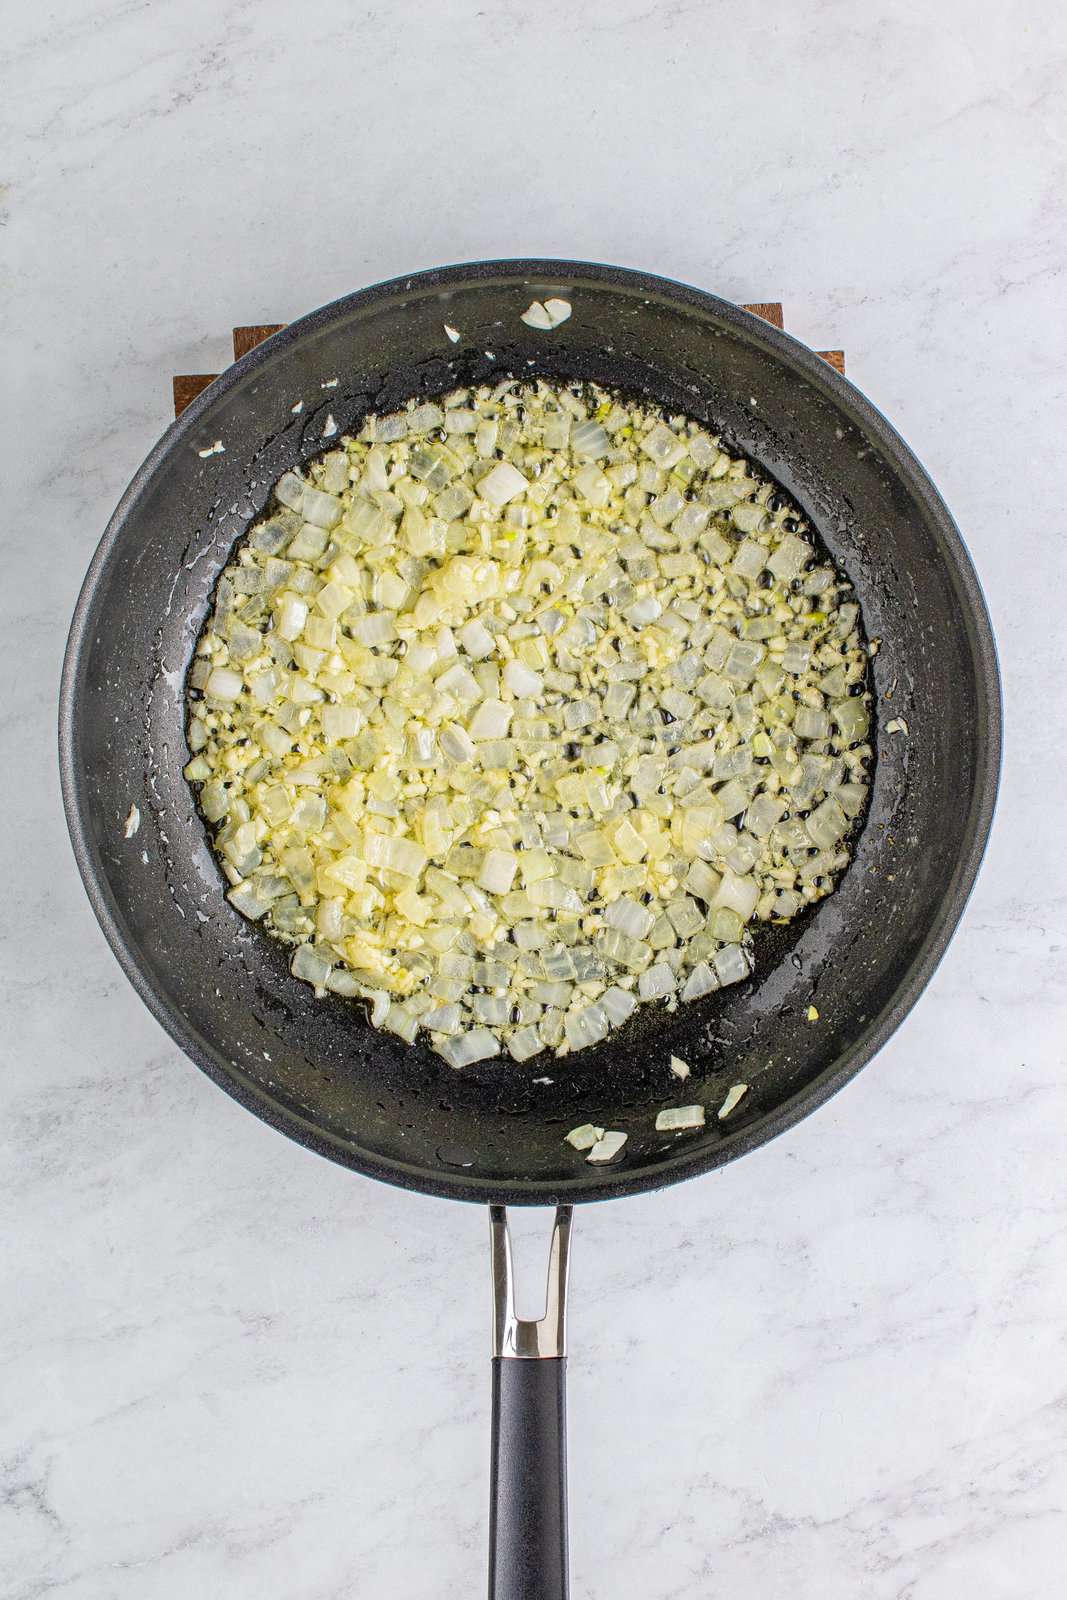 Burro, cipolle e aglio soffriggere in una padella.